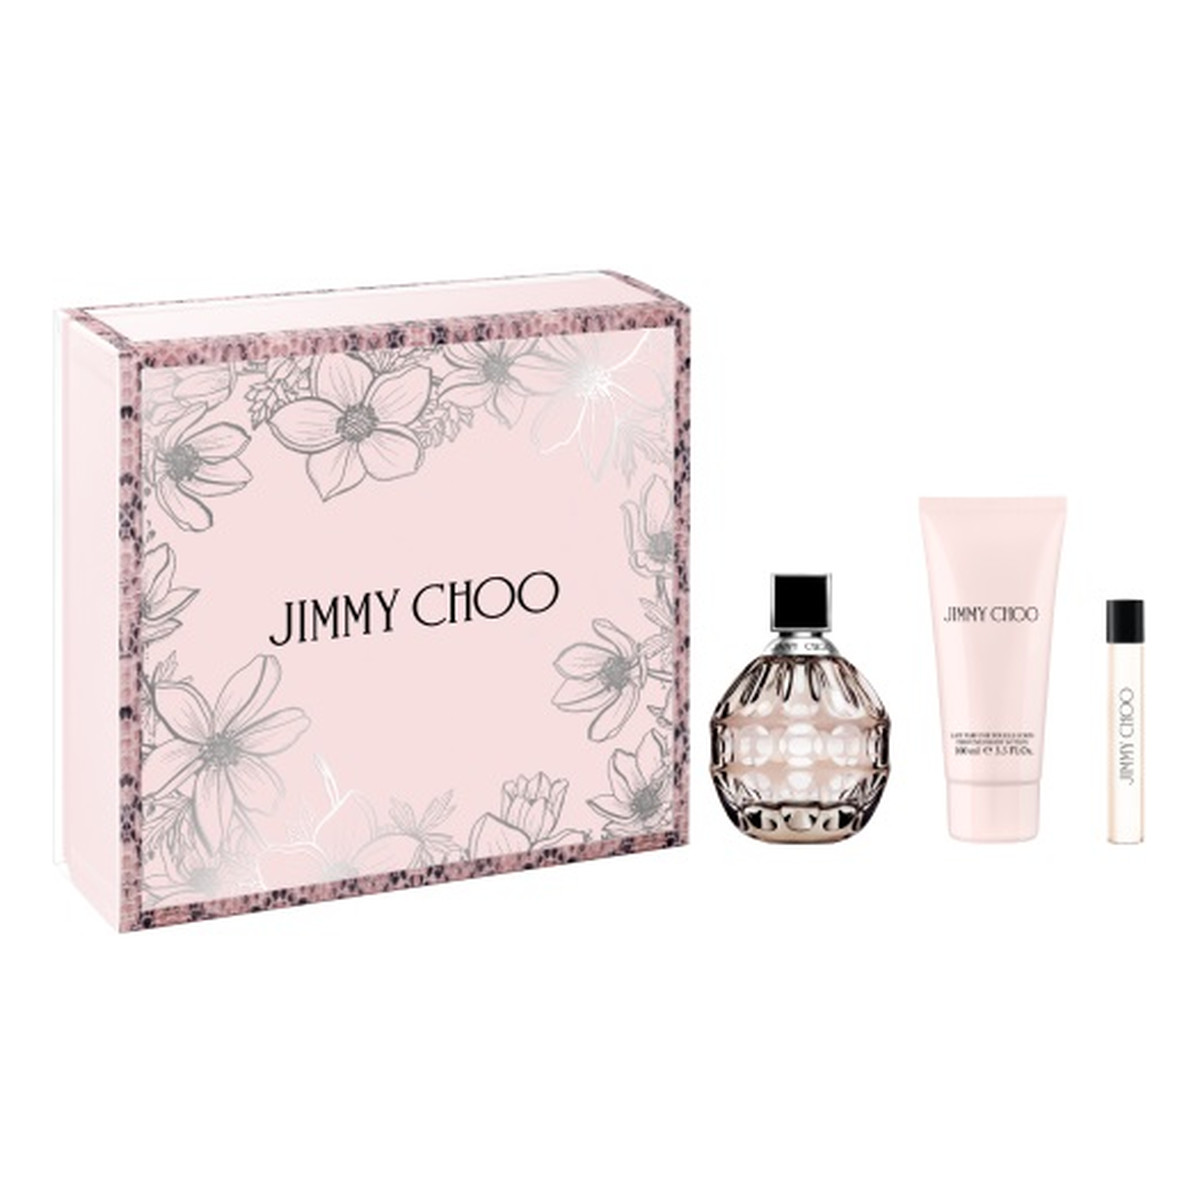 Jimmy Choo Zestaw woda perfumowana spray 100ml + balsam do ciała 100ml + miniatura wody perfumowanej 7.5ml